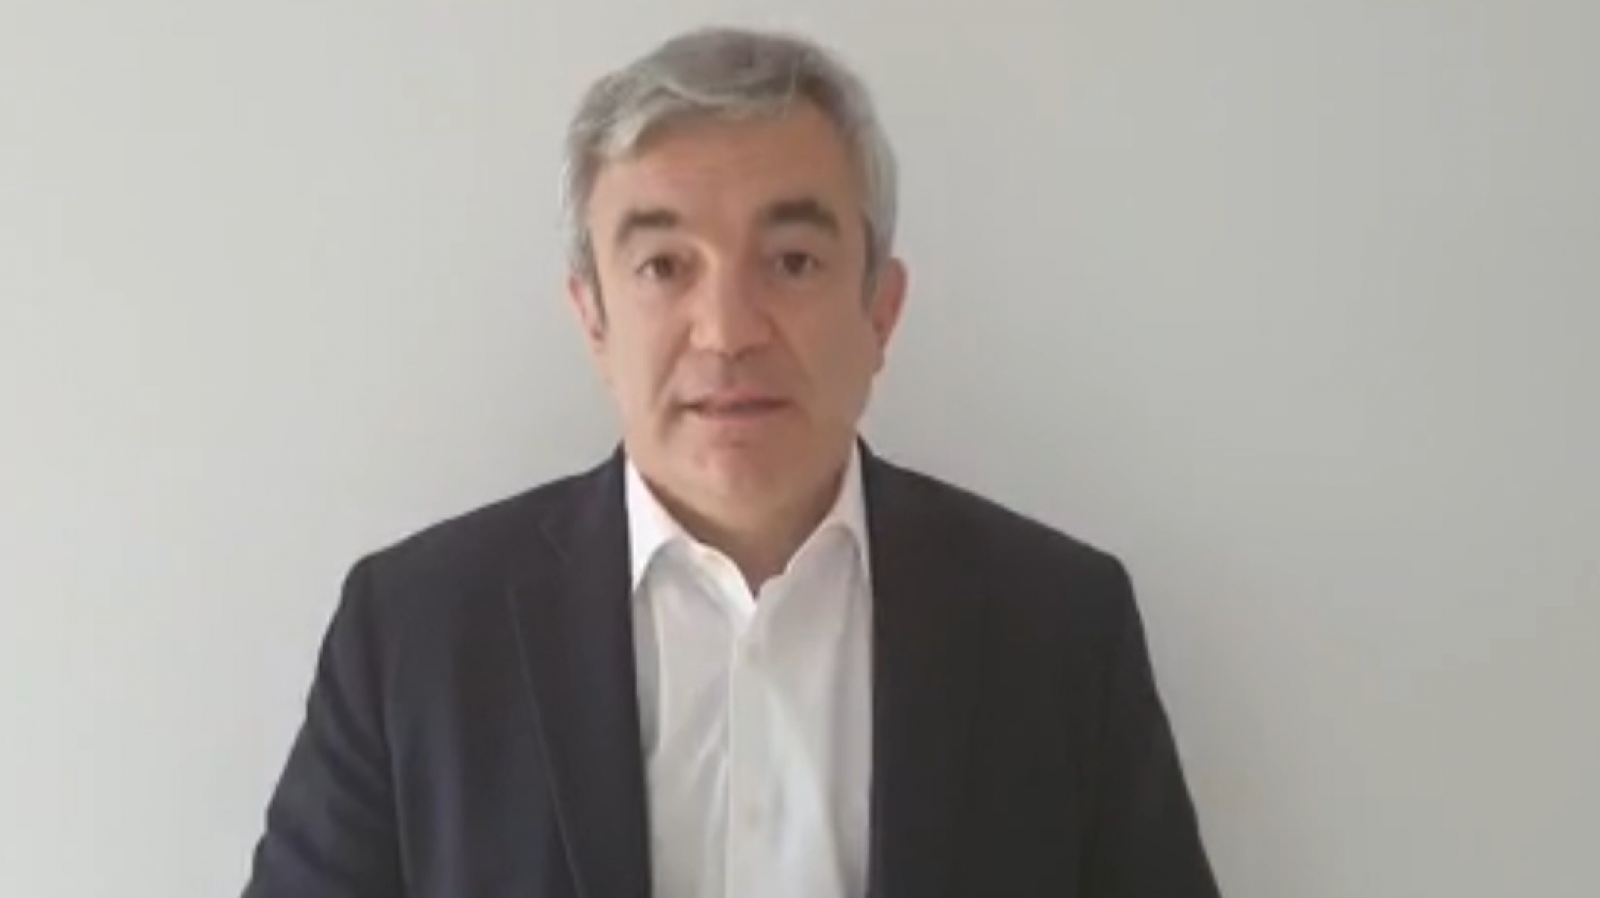 Luis Garicano, eurodiputado de Ciudadanos: "La respuesta de Europa está a la altura de la crisis que estamos viviedo"